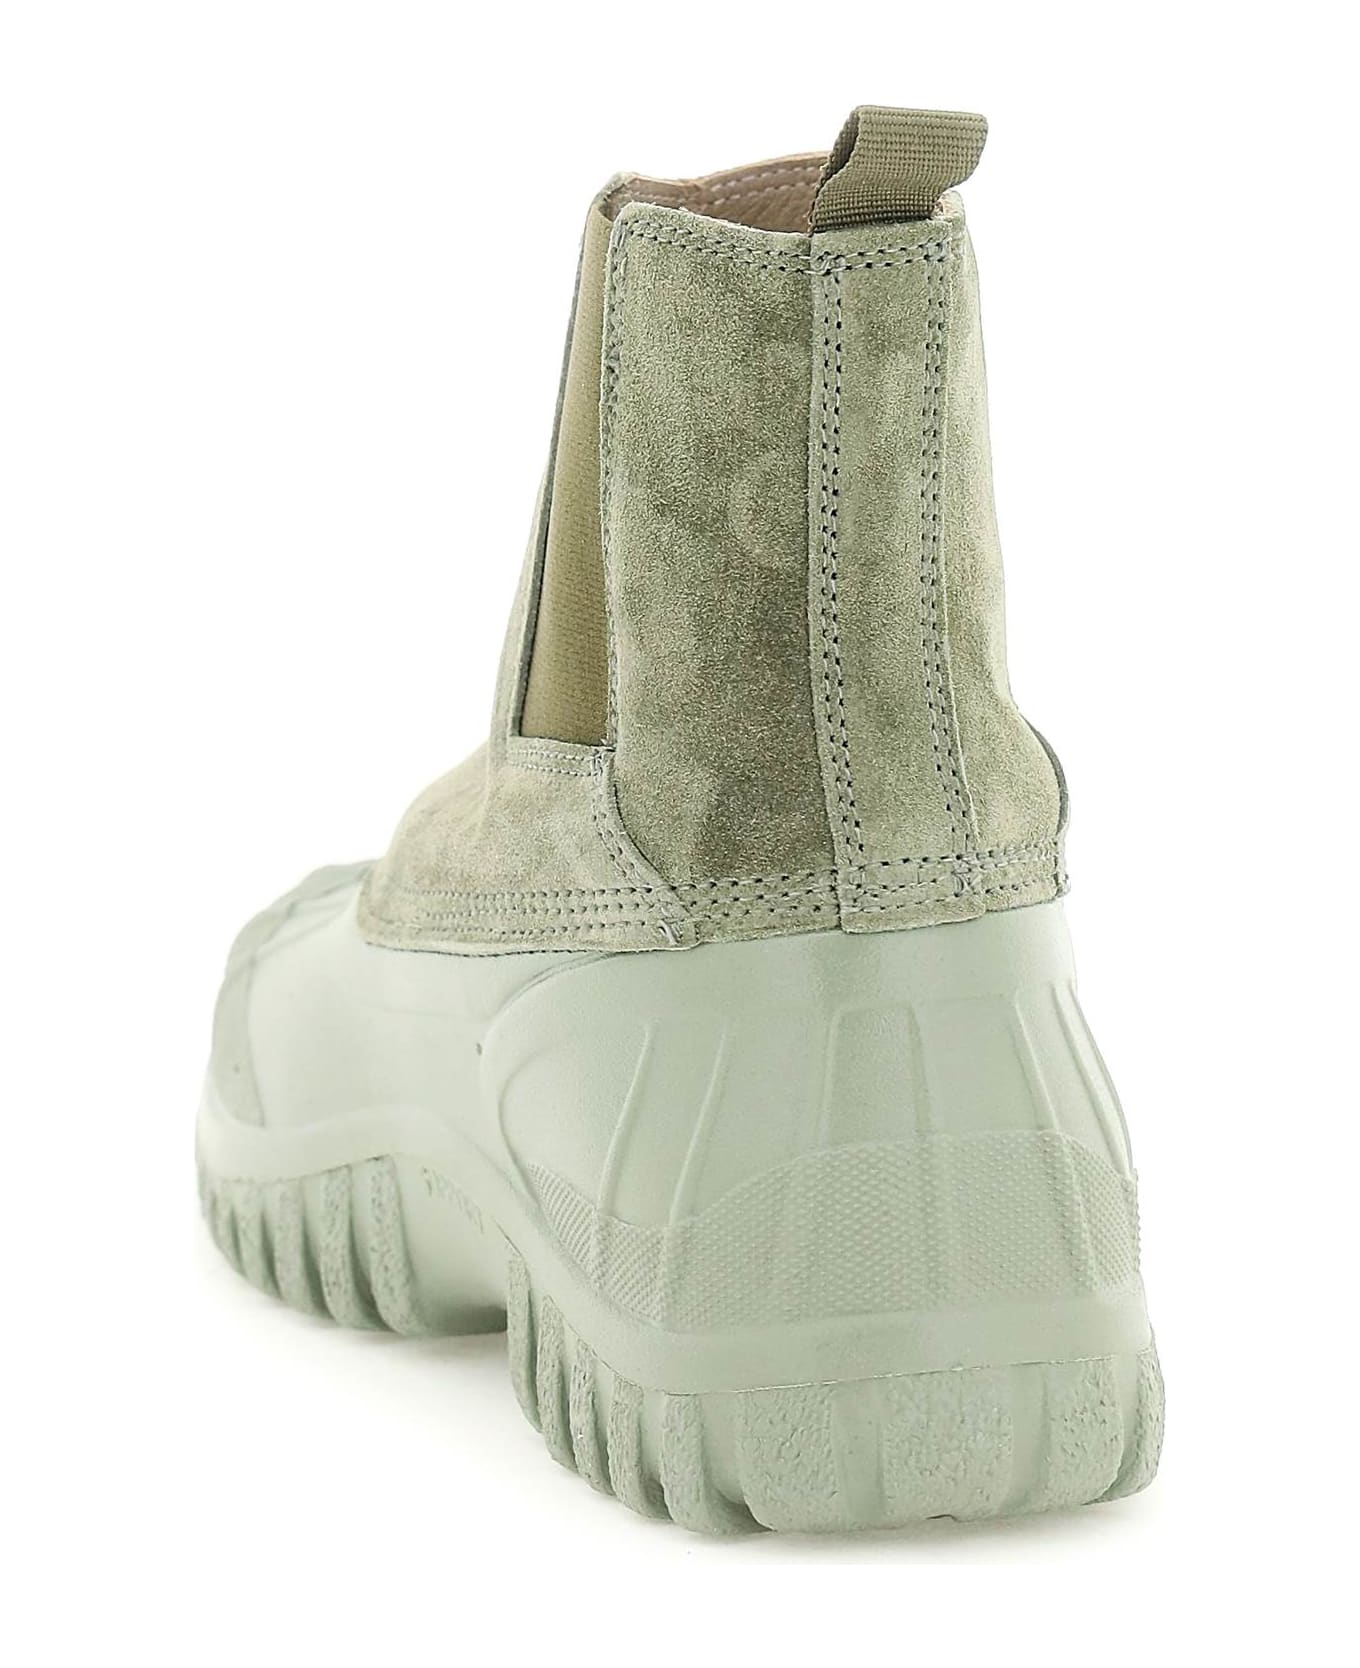 Diemme Balbi Boots - BURNT MOSS (Green) ブーツ